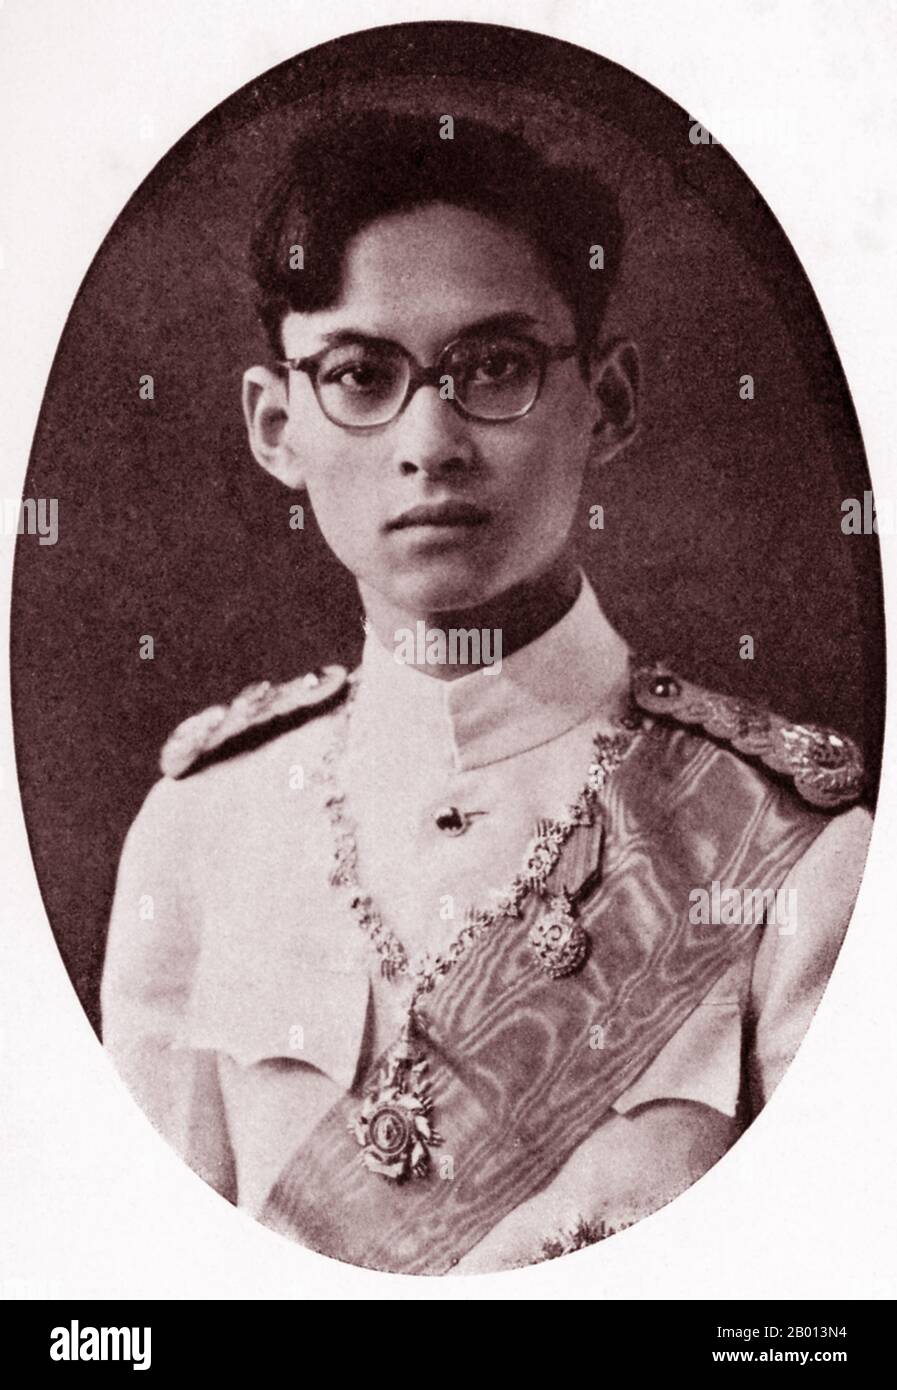 Thailand: König Rama IX, Bhumibol Adulyadej (5. Dezember 1927 – 13. Oktober 2016), 9. Monarch der Chakri-Dynastie, c. 1945. Bhumibol Adulyadej (Phumiphon Adunyadet) war der 9. König von Thailand. Er war bekannt als Rama IX, und innerhalb der thailändischen königlichen Familie und enge Mitarbeiter einfach als Lek. Nachdem er seit dem 9. Juni 1946 regierte, war er einer der dienstältesten Staatsoberhäupter der Welt und der am längsten regierende Monarch in der thailändischen Geschichte. Stockfoto